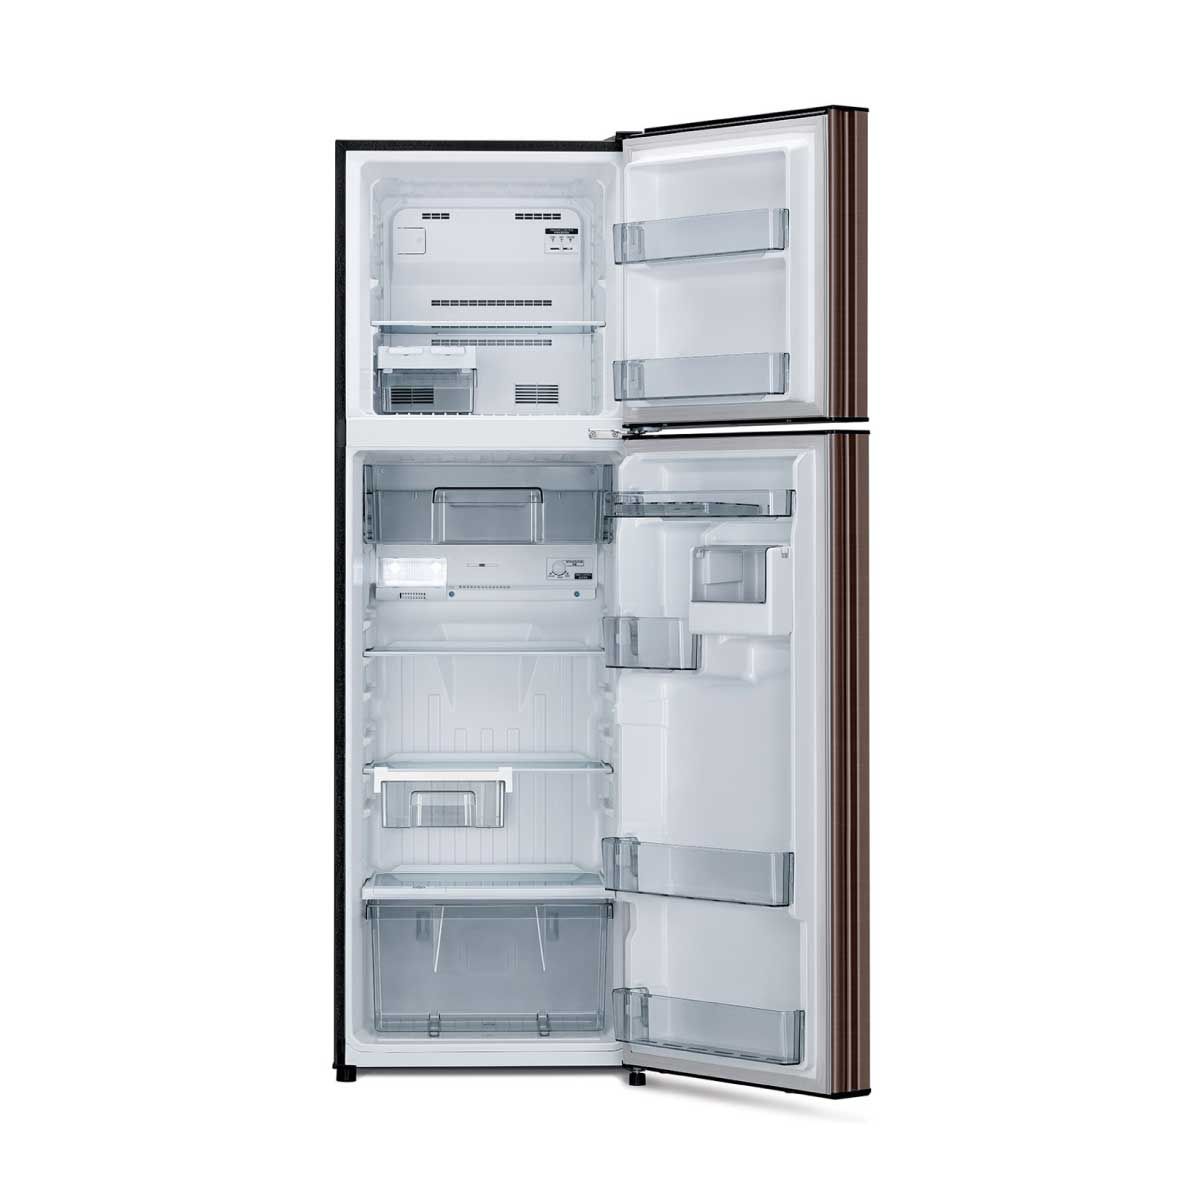 MITSUBISHI ELECTRIC ตู้เย็น 2 ประตู10.2คิว สีน้ำตาล รุ่นMR-FC31ET